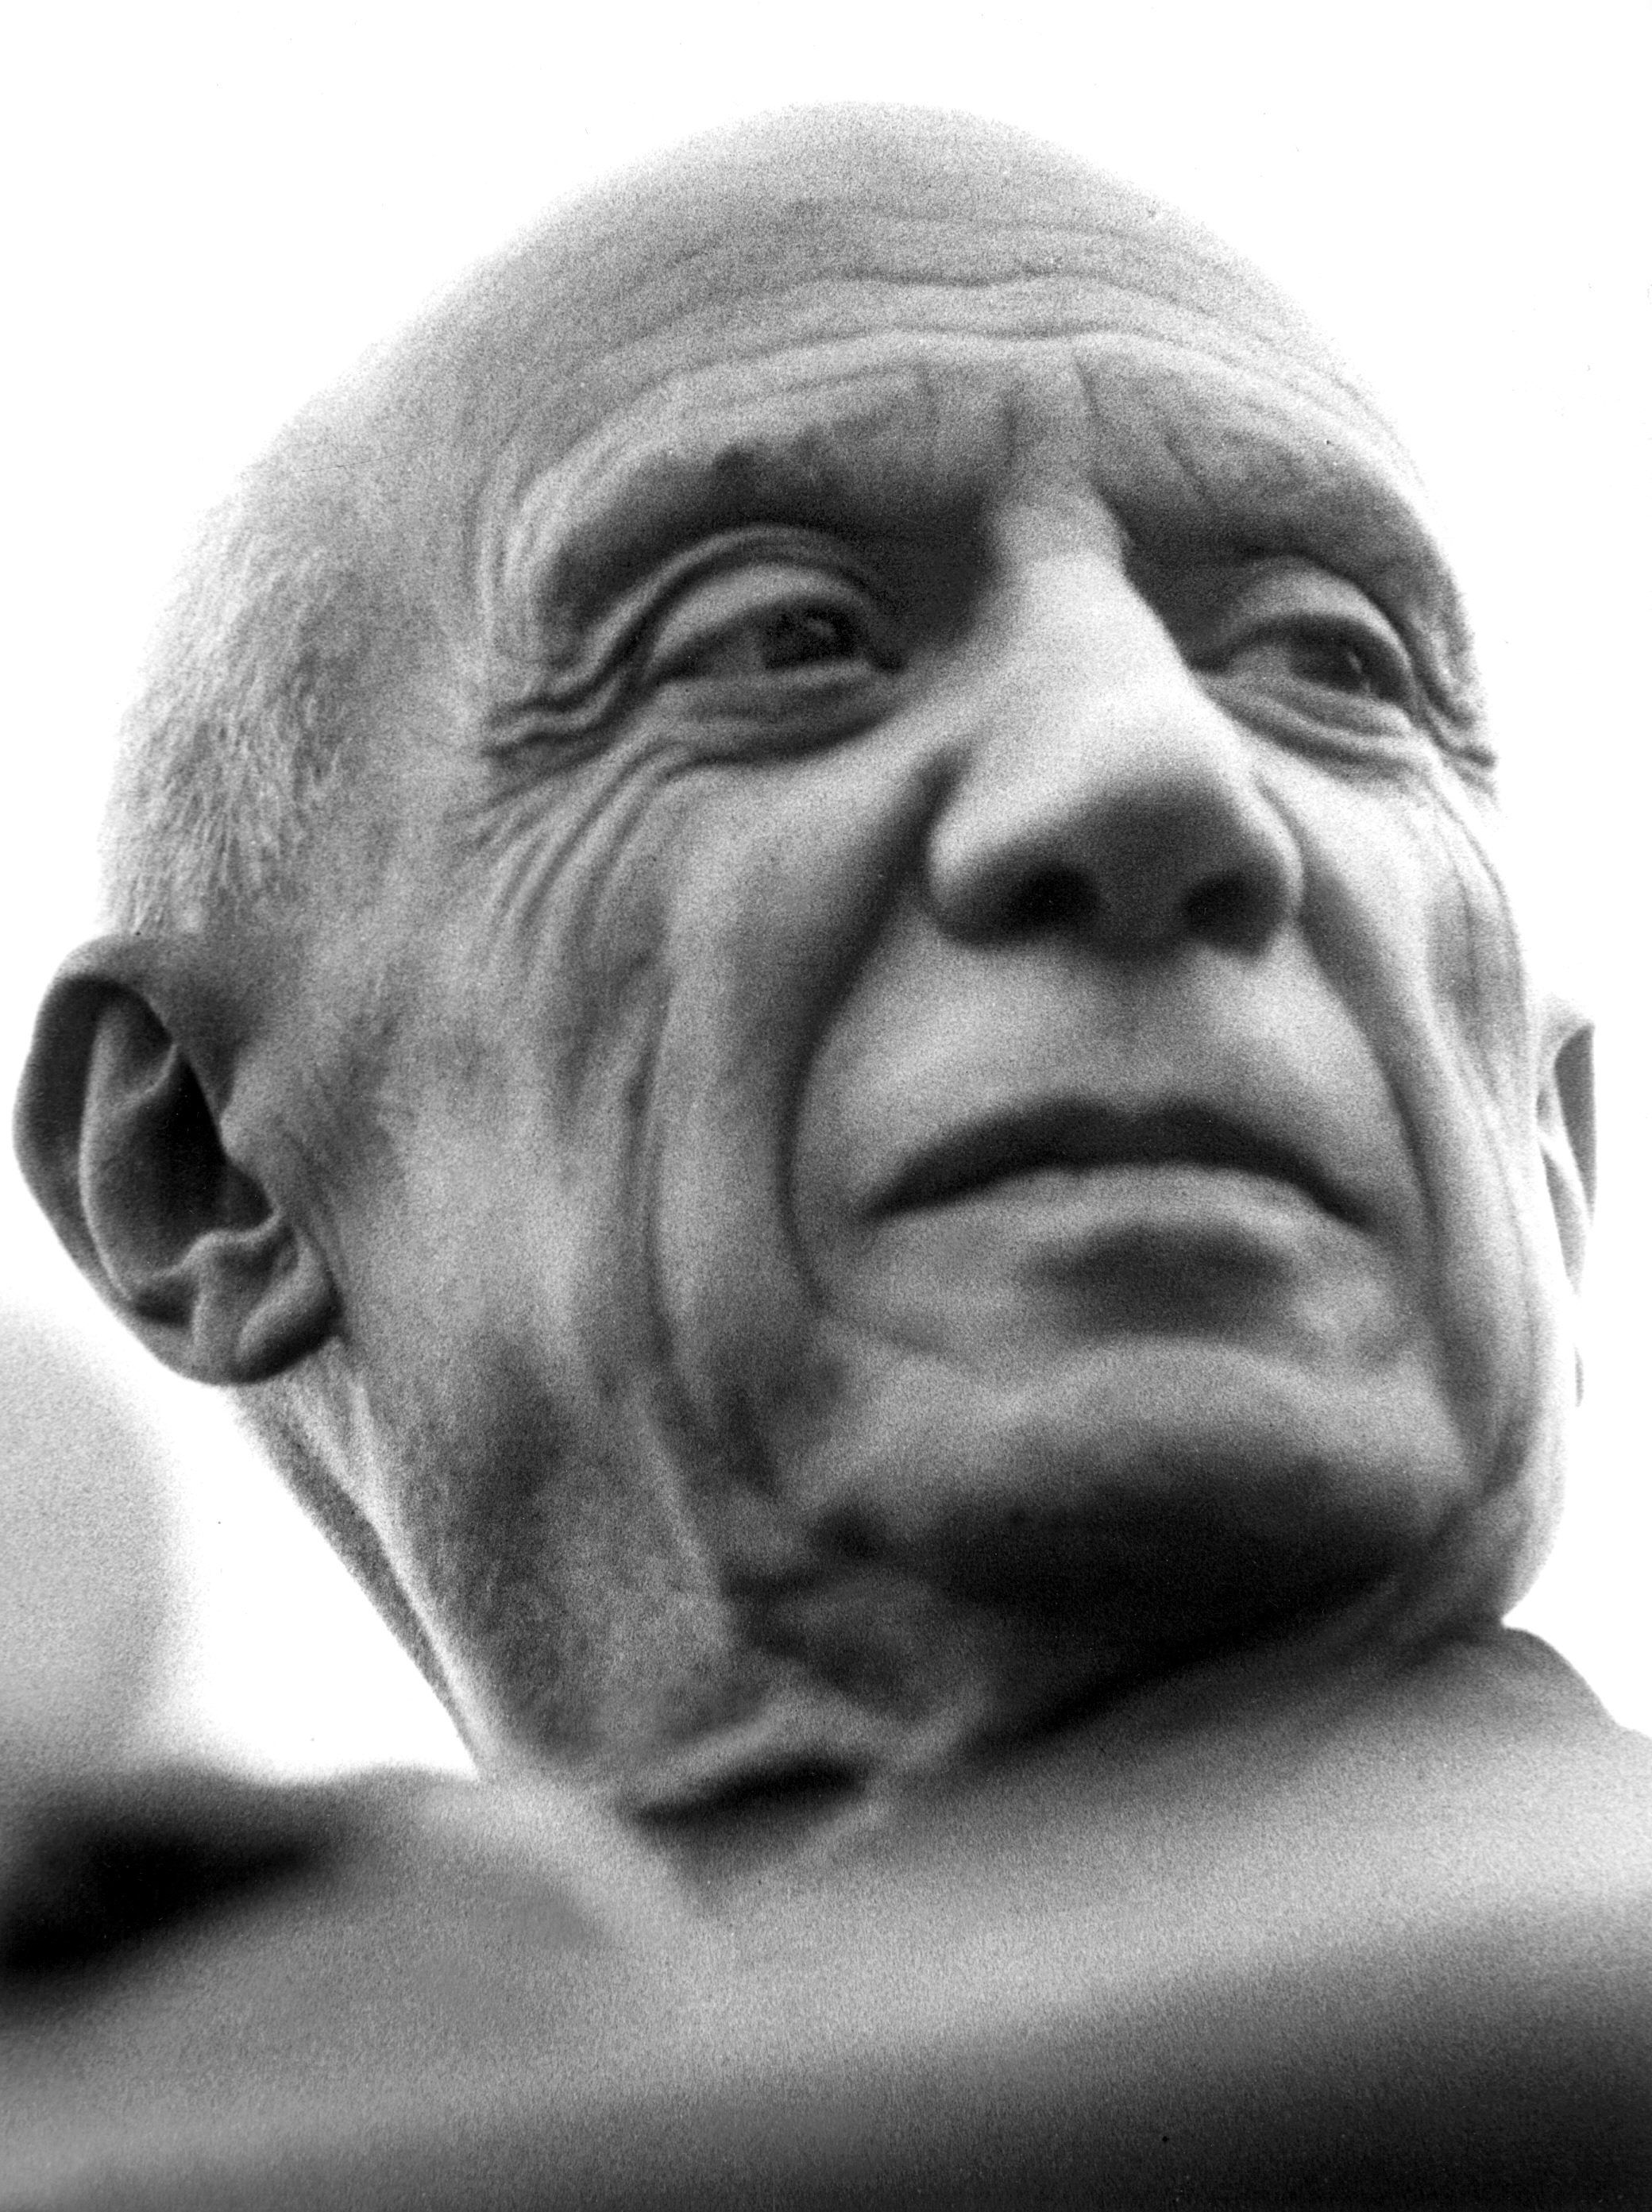 Retrato del pintor Pablo Picasso, en una fotografía de archivo. EFE/ AGIP/ jda
